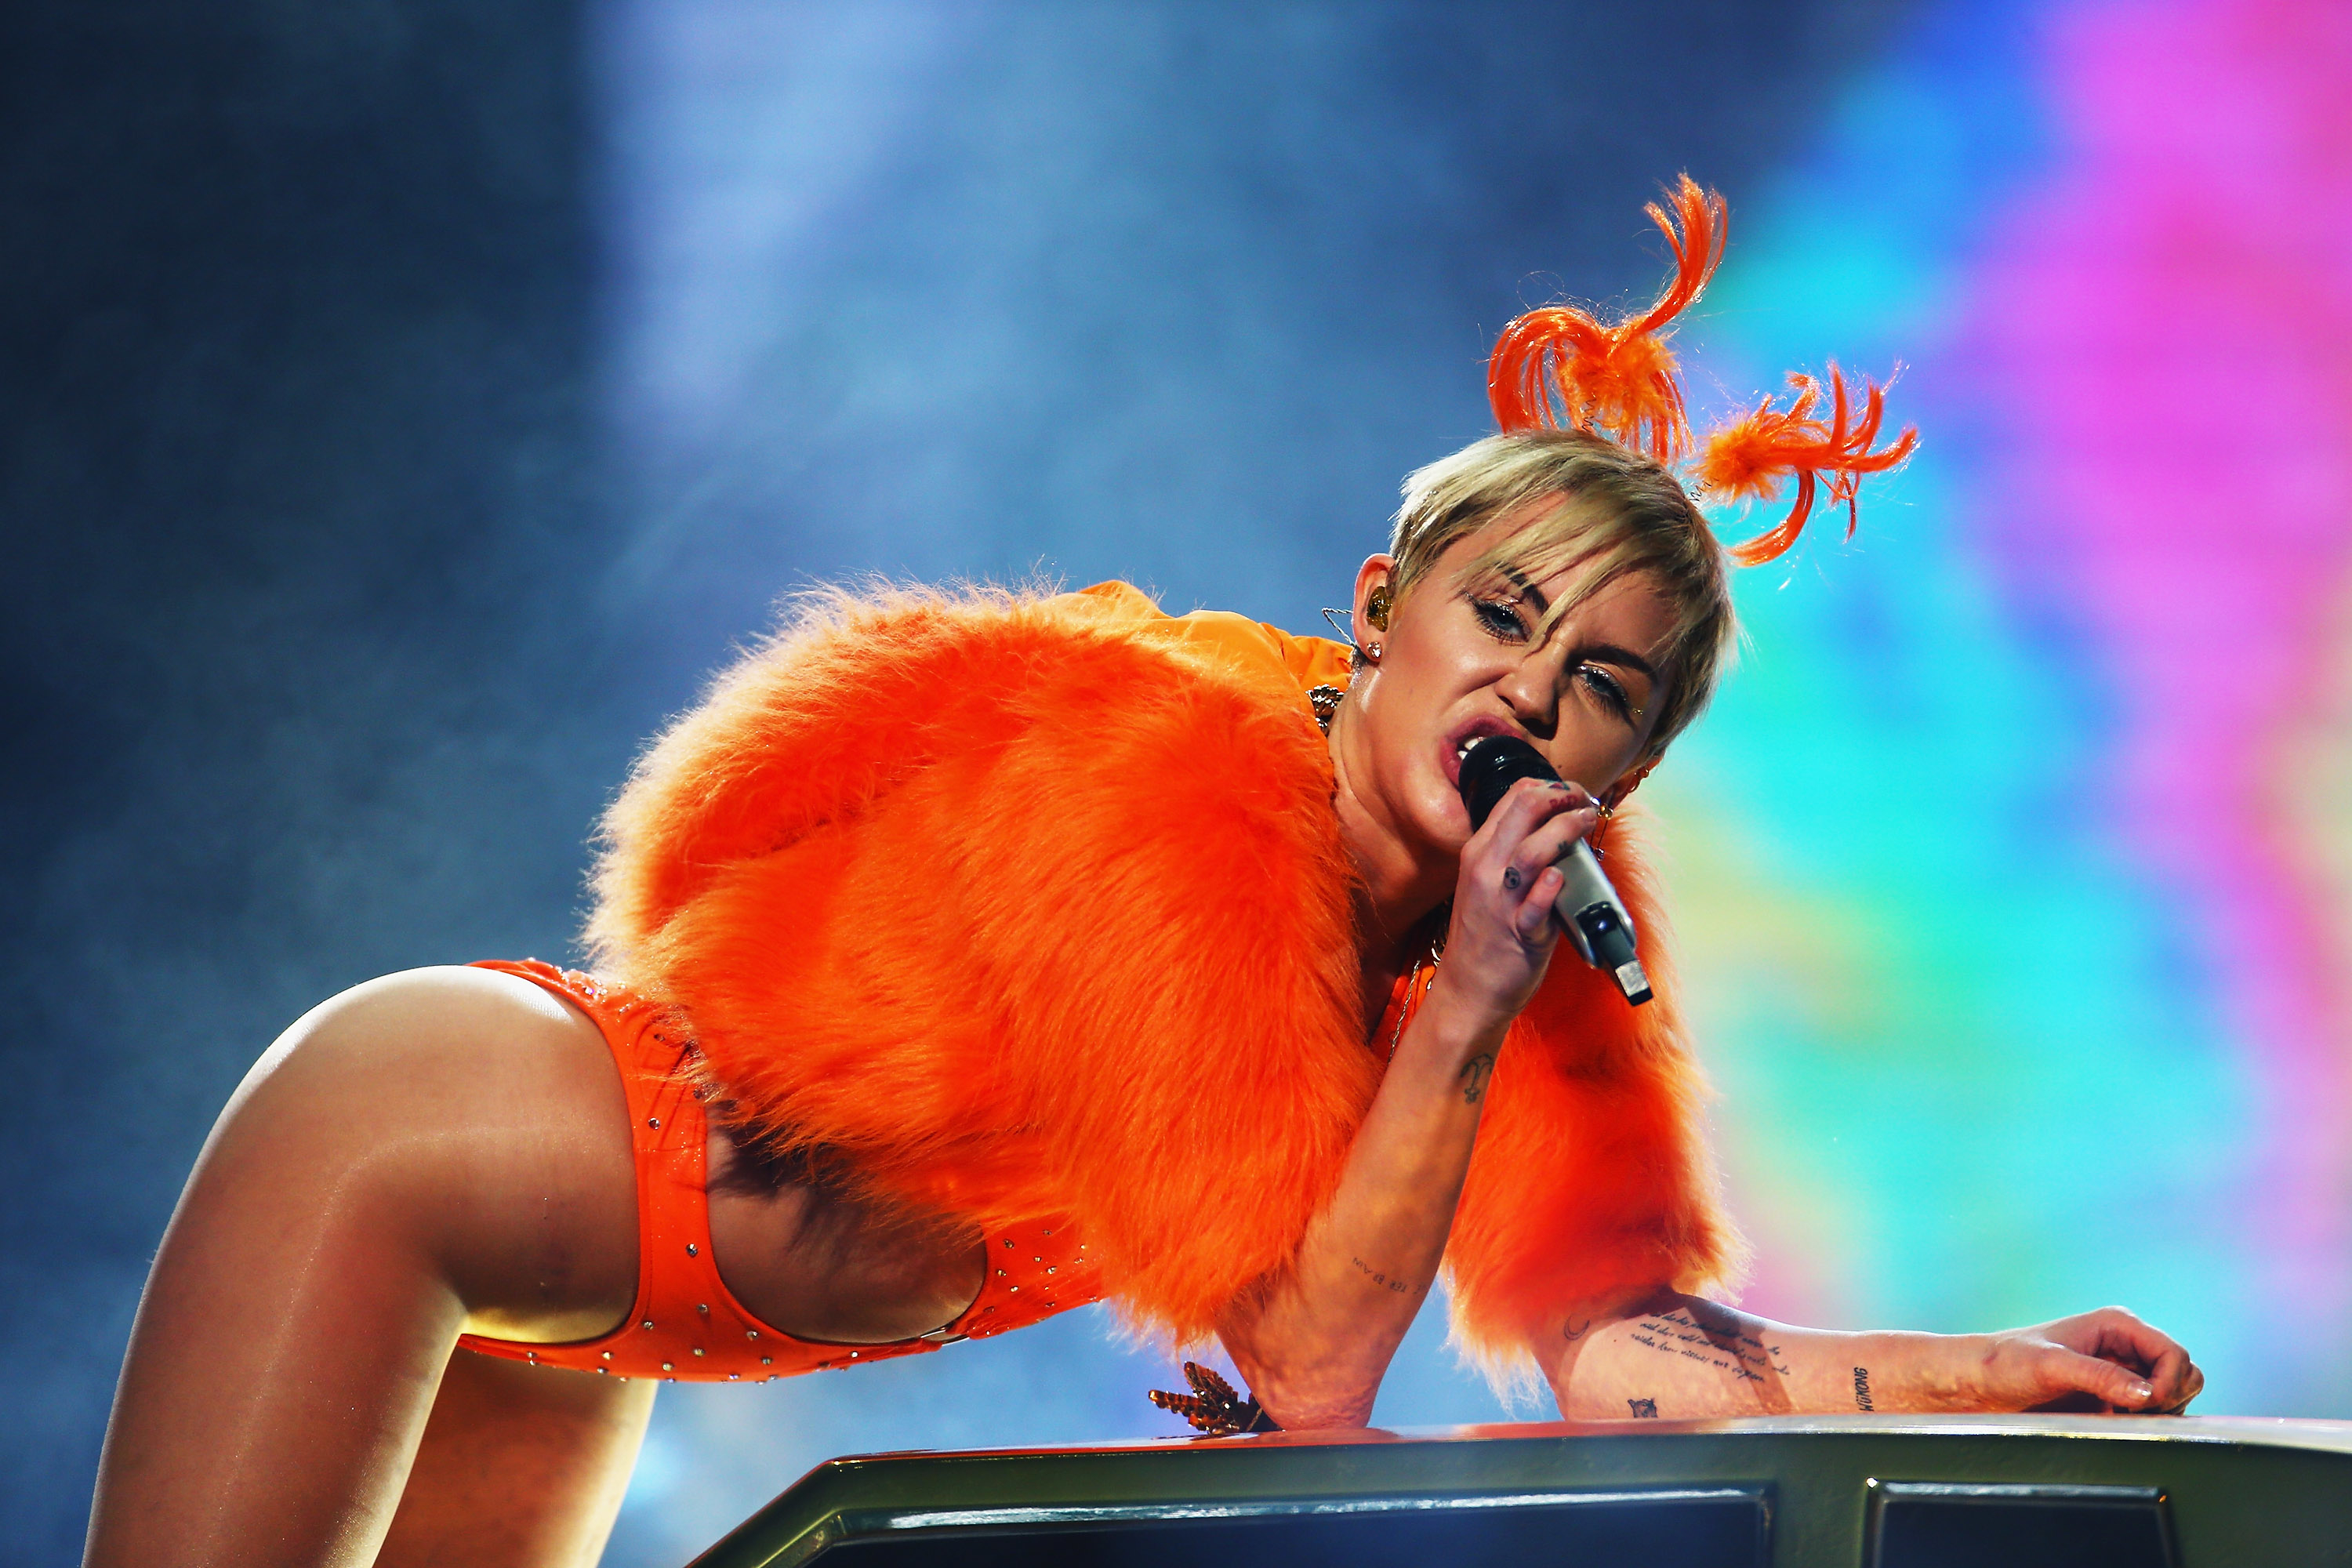 Miley performing onstage